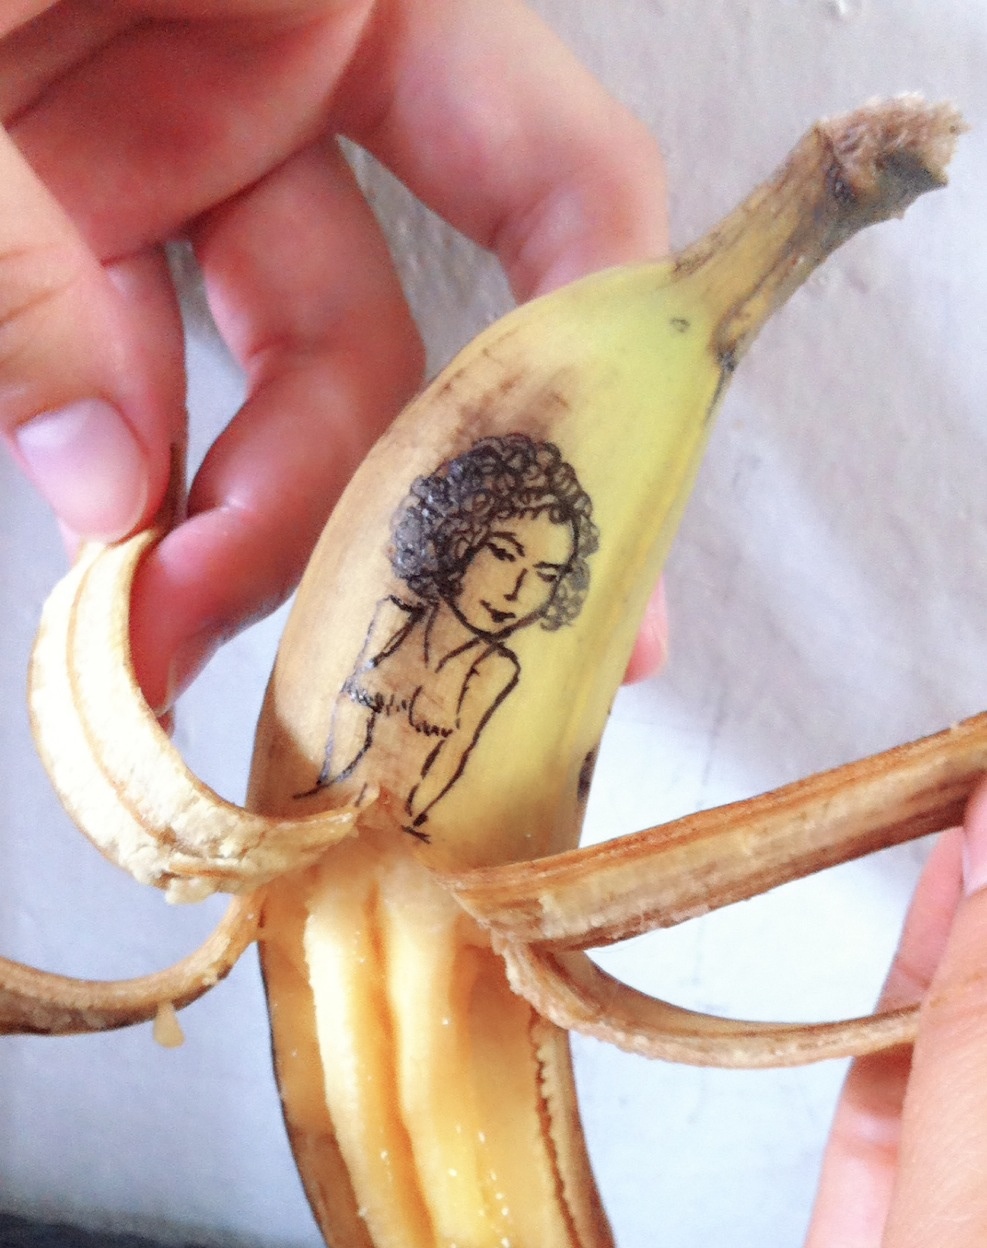 香蕉雕刻图片大全简单图片